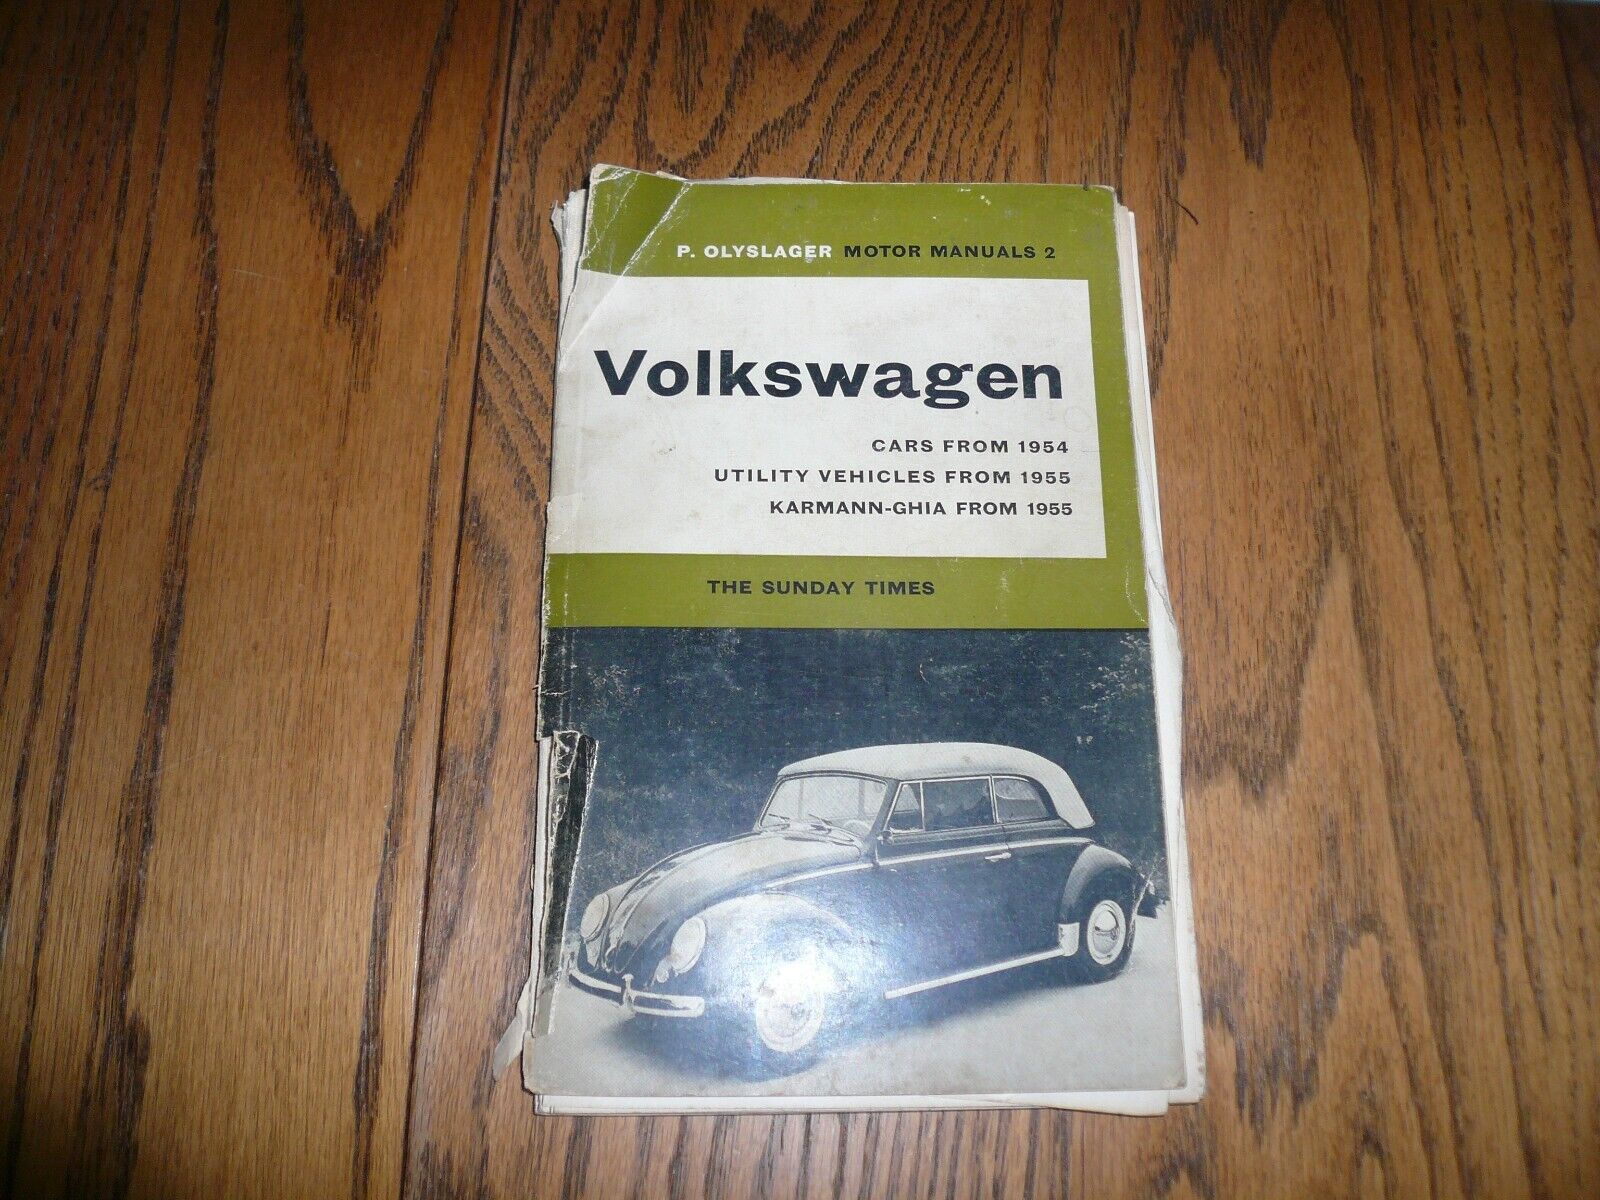 1954 1955 Volkswagen Cars Utility Karman -Ghia Motor Manual by P. Olyslager